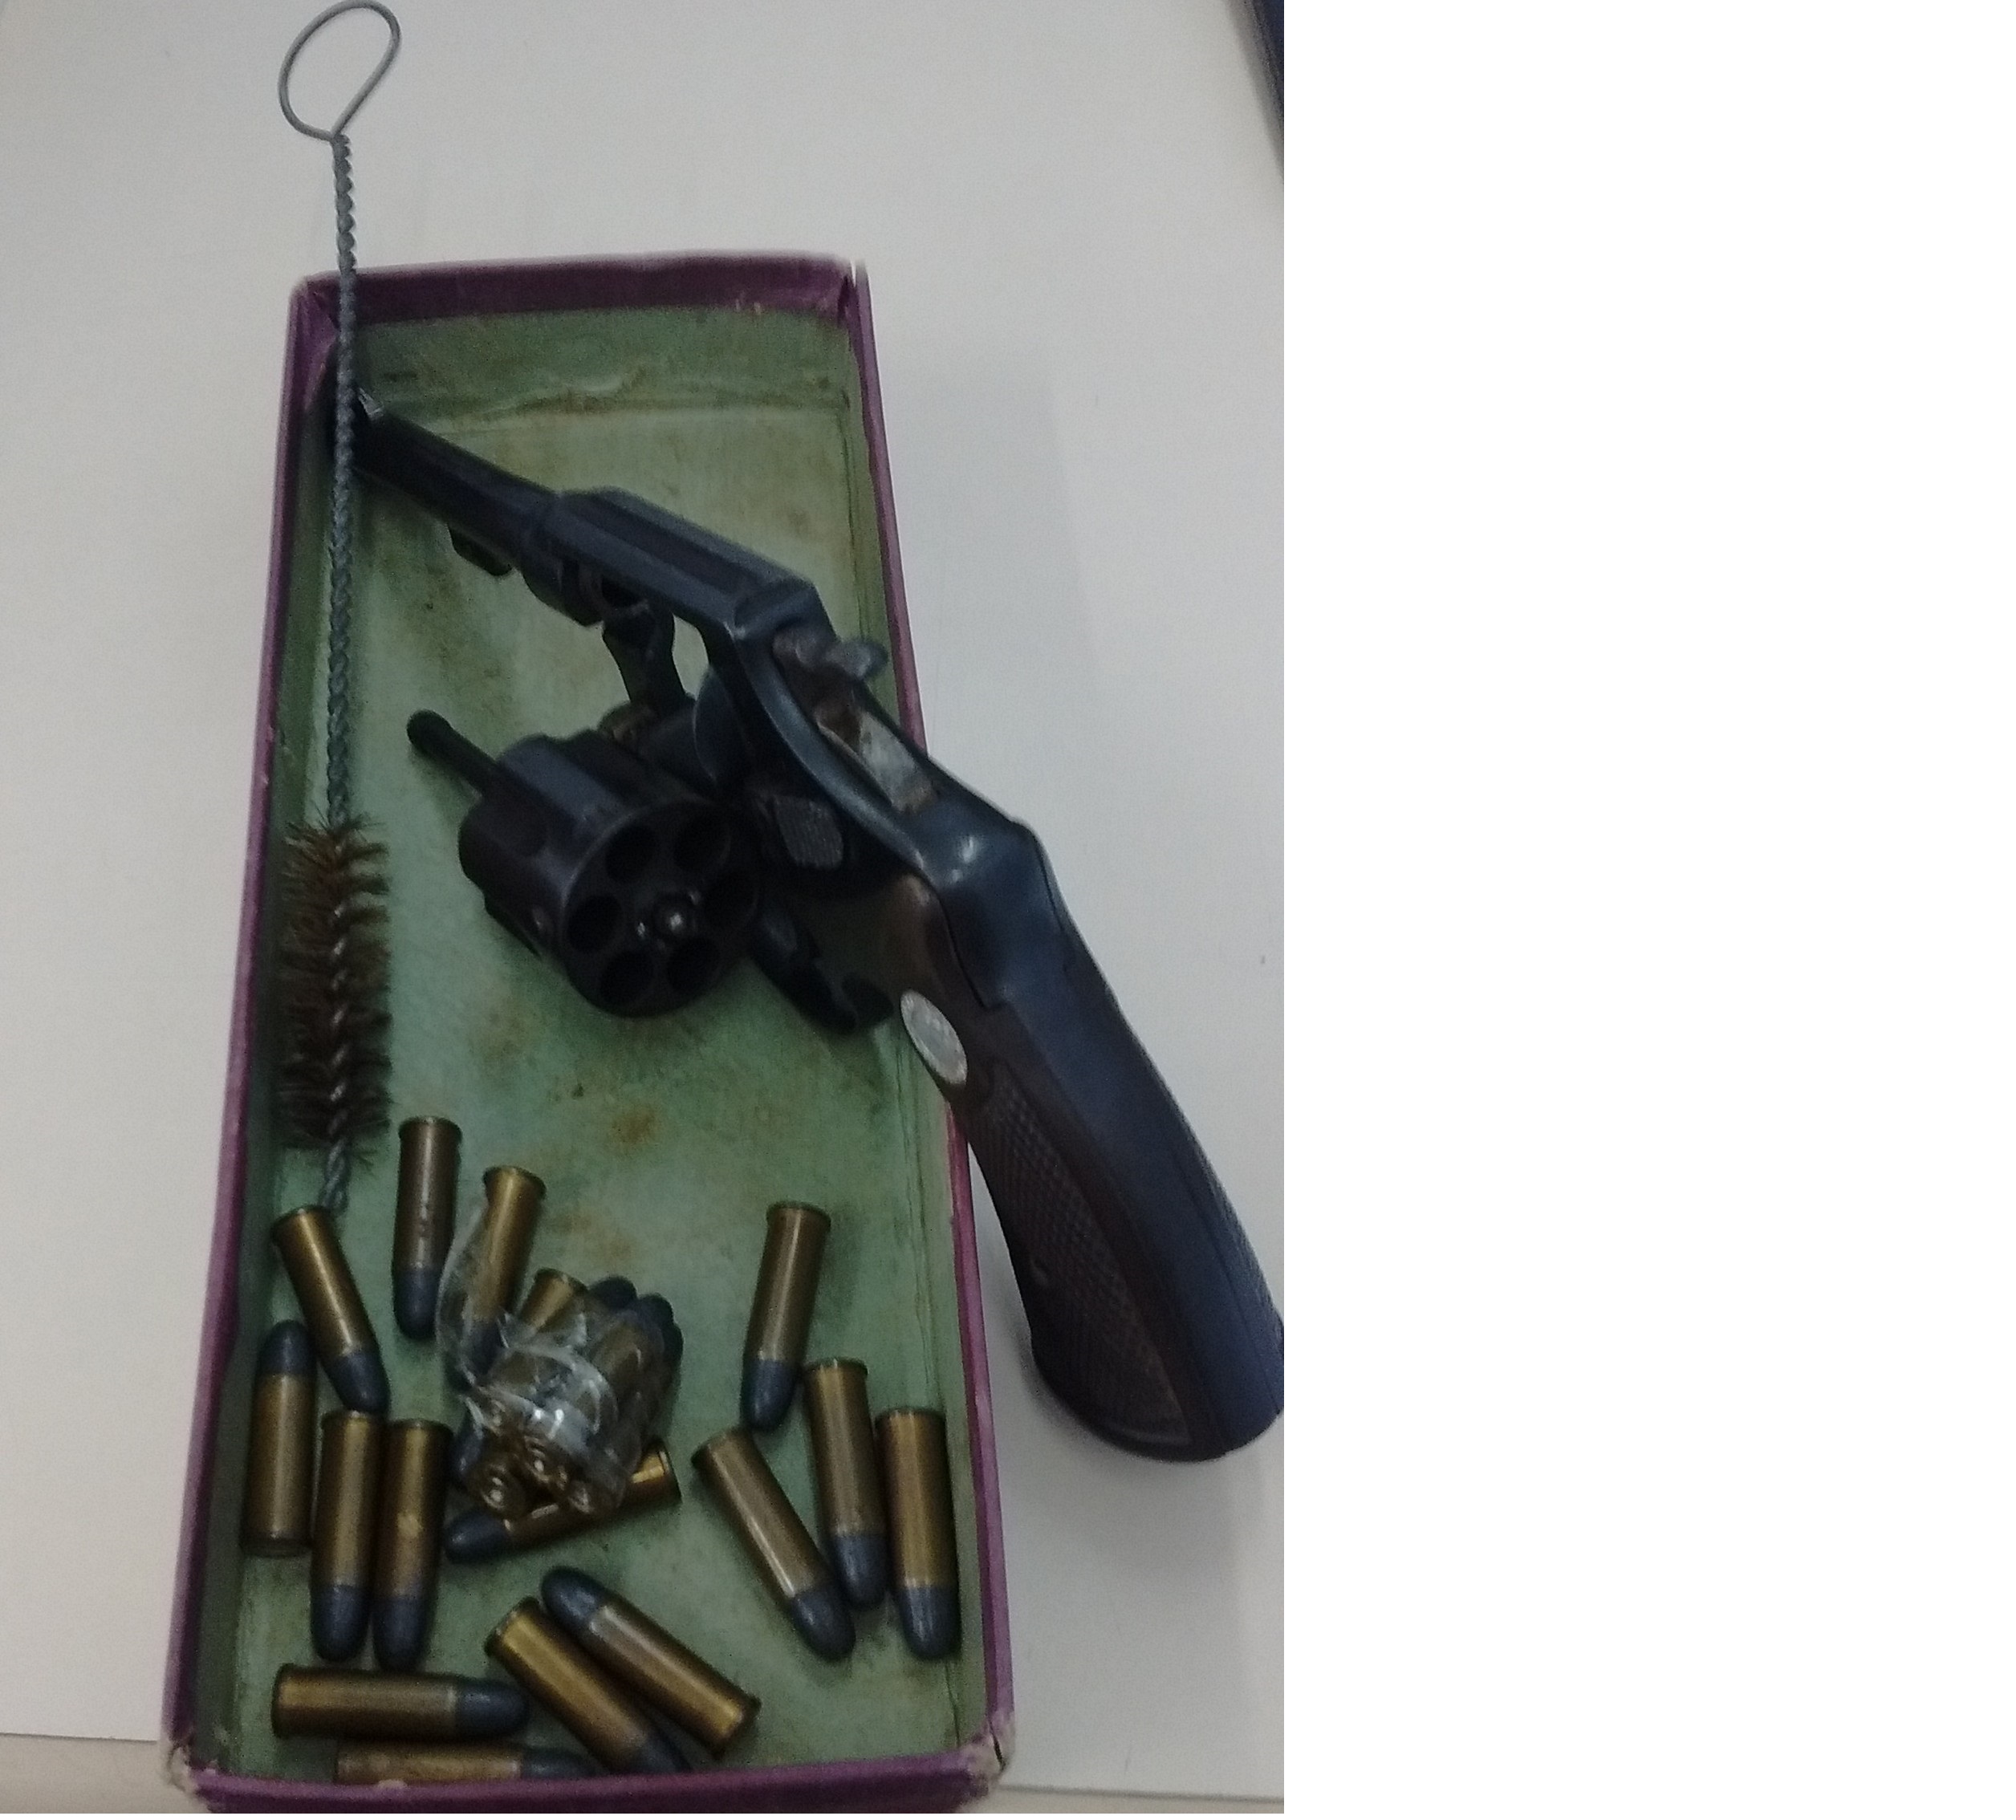 Arma e munições apreendidas com a adolescente. Foto: Polícia Civil/Divulgação